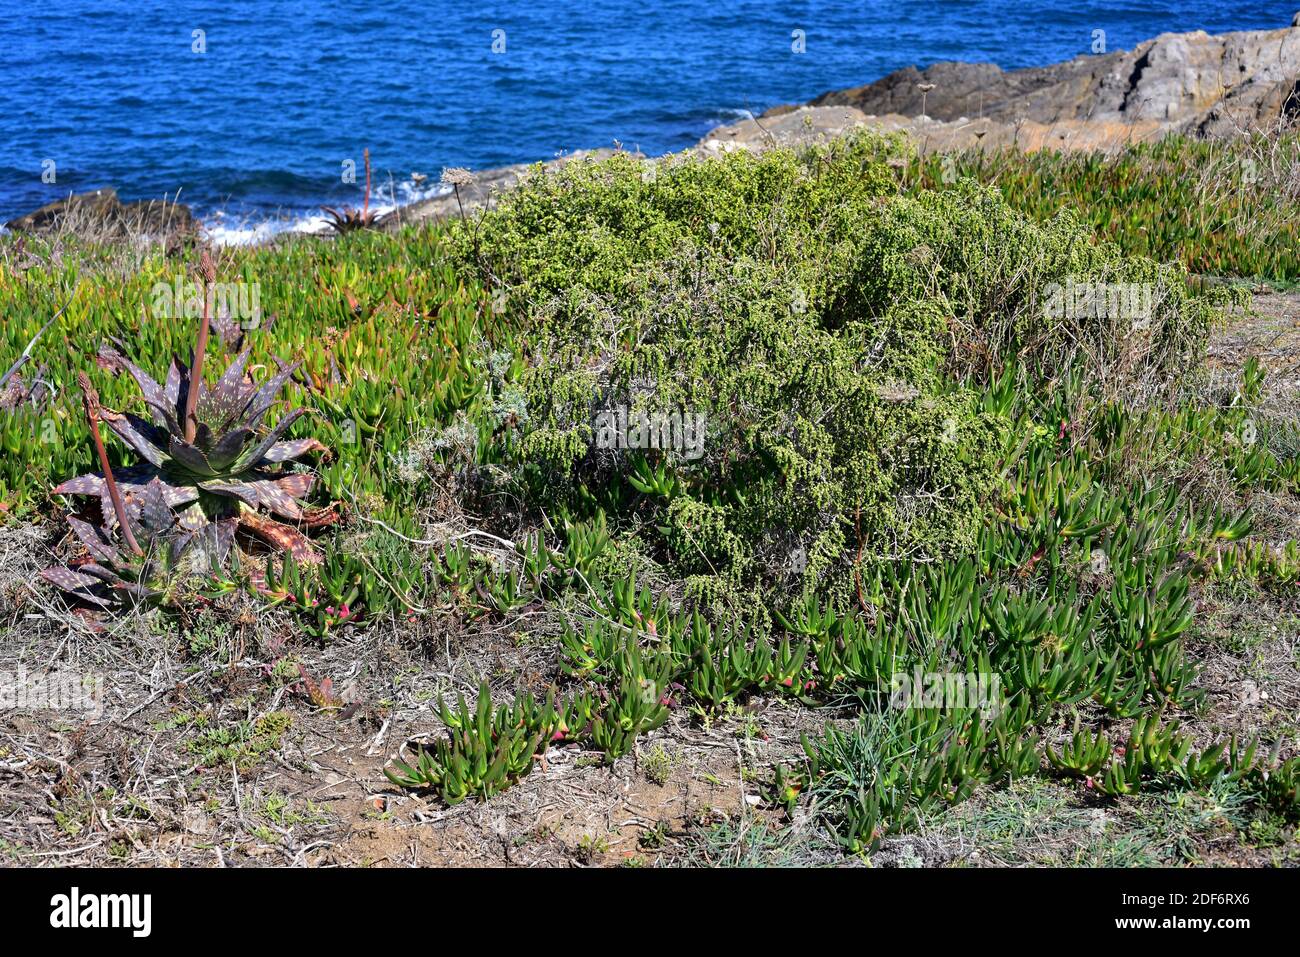 Boalaga (Thymelaea hirsuta) è un arbusto perenne originario delle coste del bacino mediterraneo. Accanto a Thymelaea vi sono piante invasive come il Mesembryanthemum Foto Stock